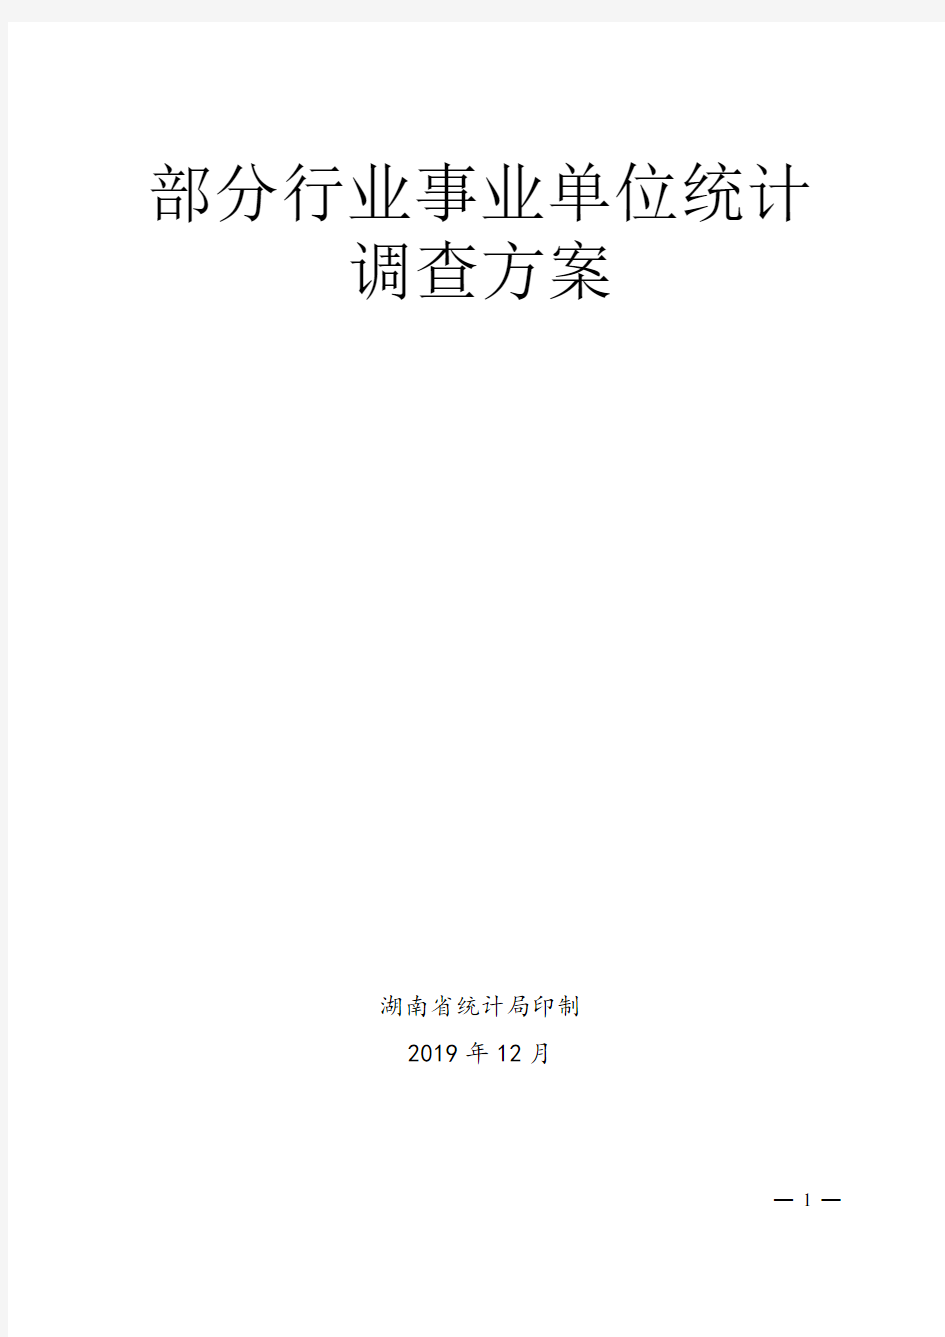 湖南省部分行业事业单位统计调查方案(2019-2020)